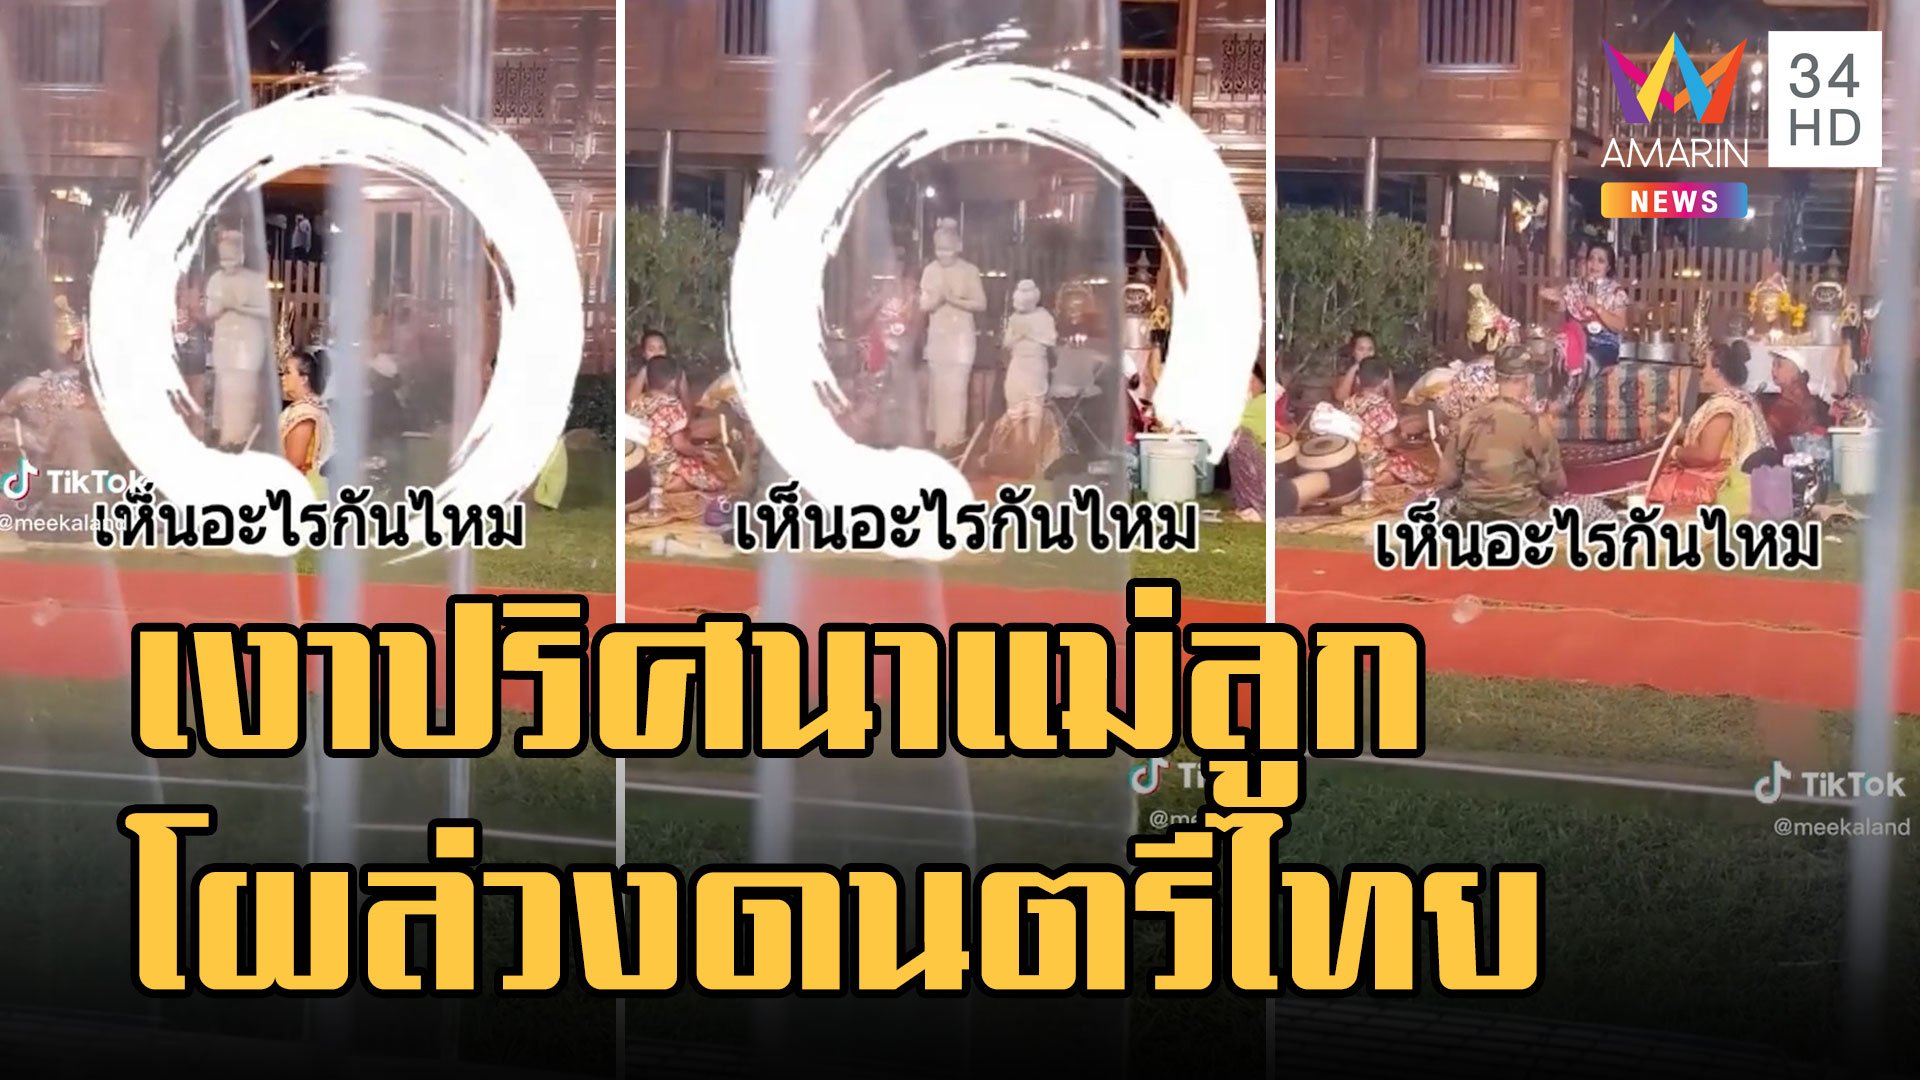 หลอนมั้ย! เงาปริศนาแม่ลูกโผล่กลางวงดนตรีไทย | ข่าวอรุณอมรินทร์ | 11 พ.ย. 65 | AMARIN TVHD34